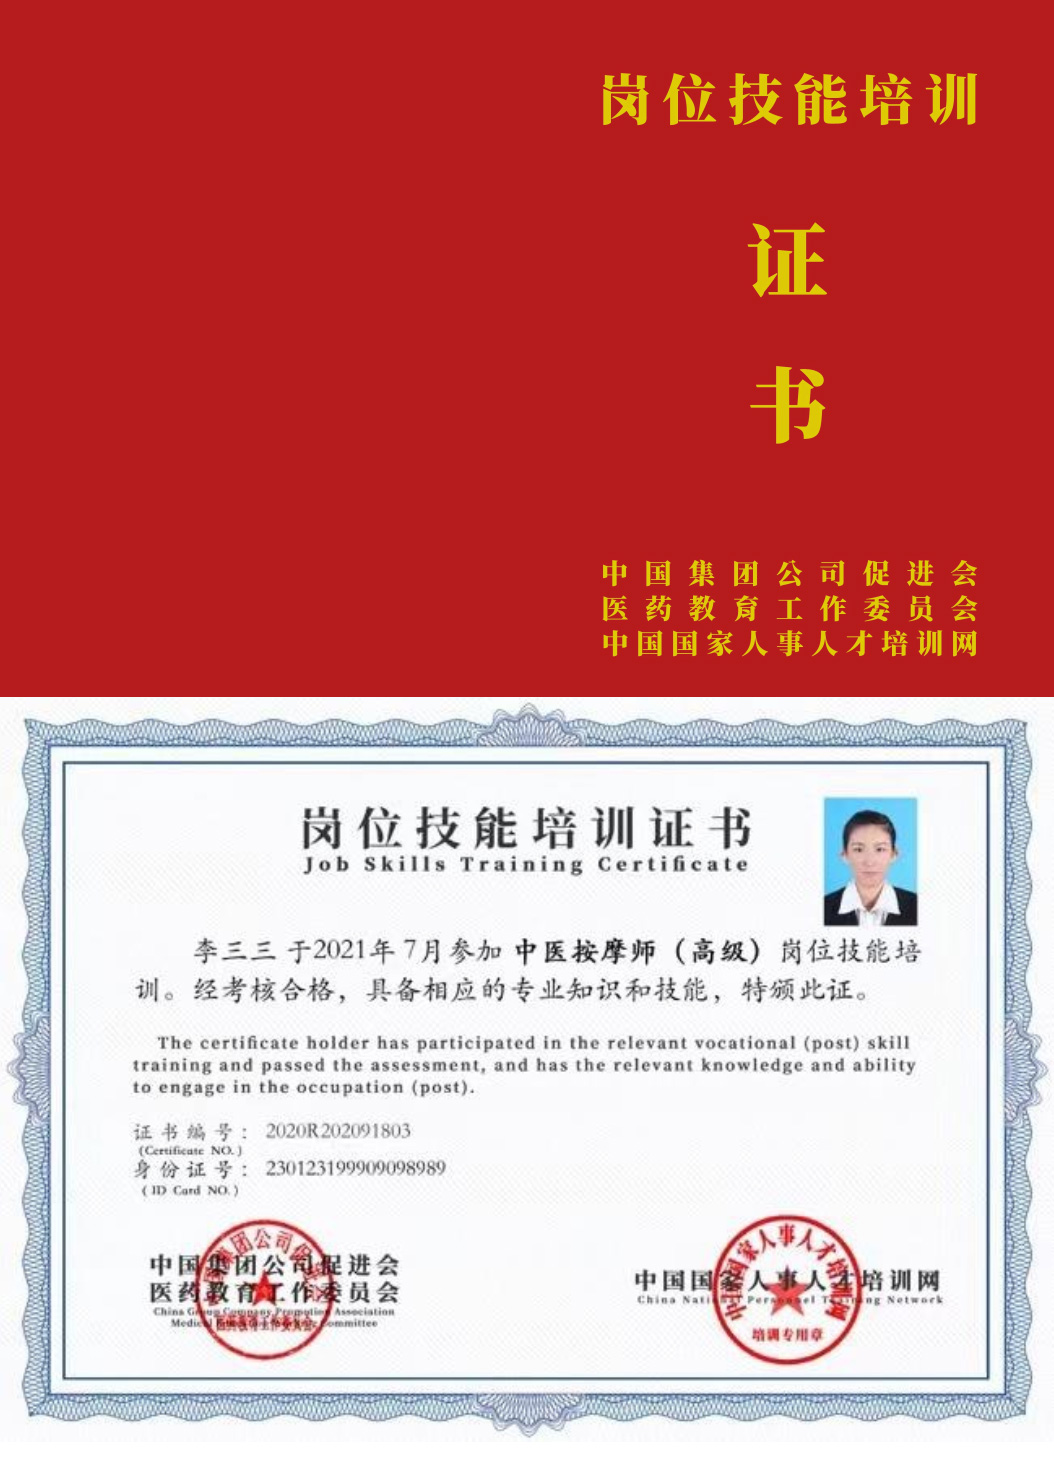 中国国家人事人才培训网 心理咨询师 岗位技能培训证书